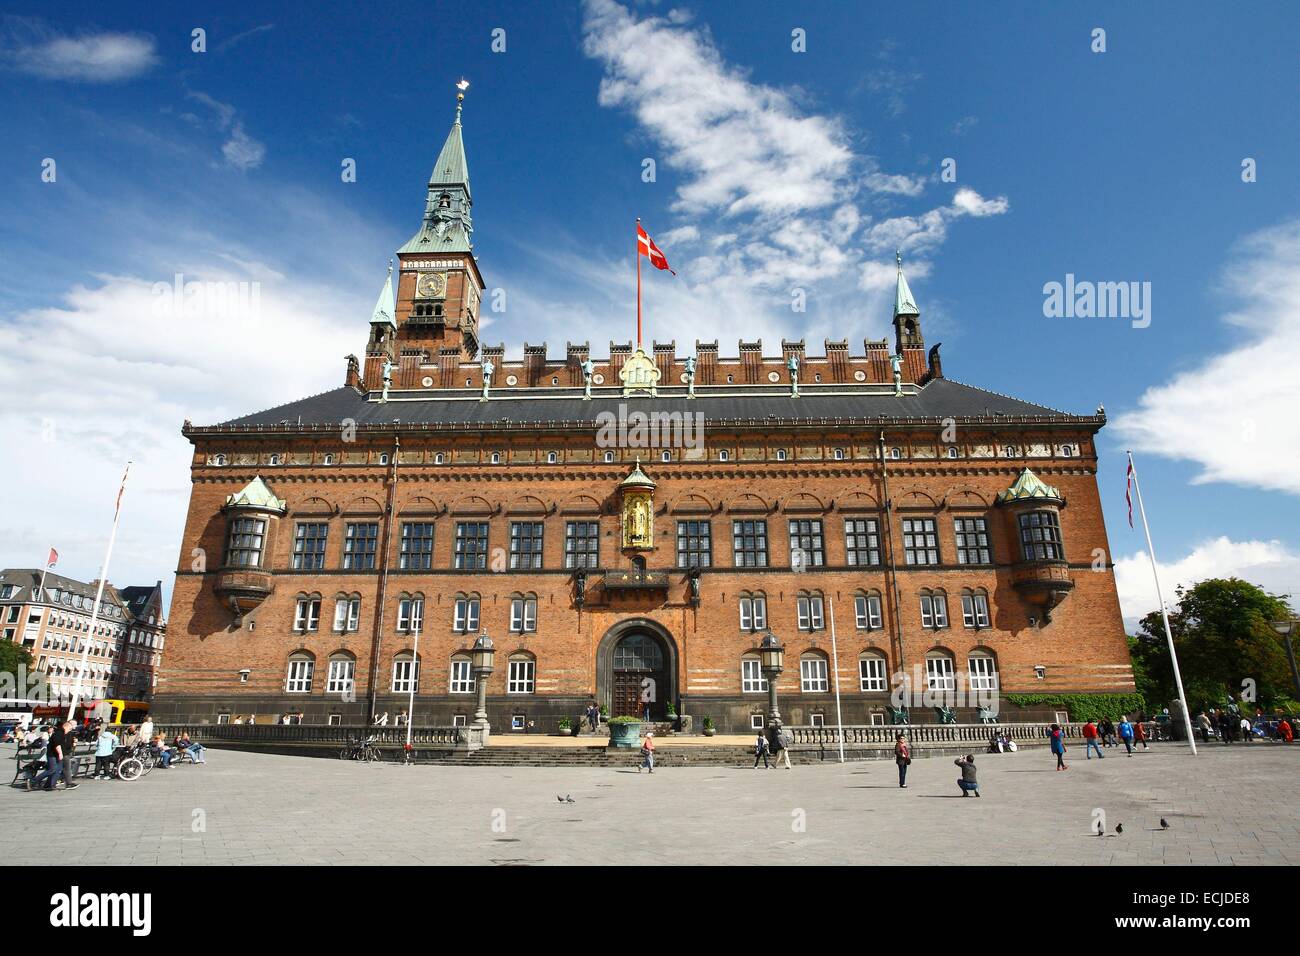 Denmark, Capital (Hovedstaden), Copenhagen, the city hall (K°benhavns Rσdhus) Stock Photo